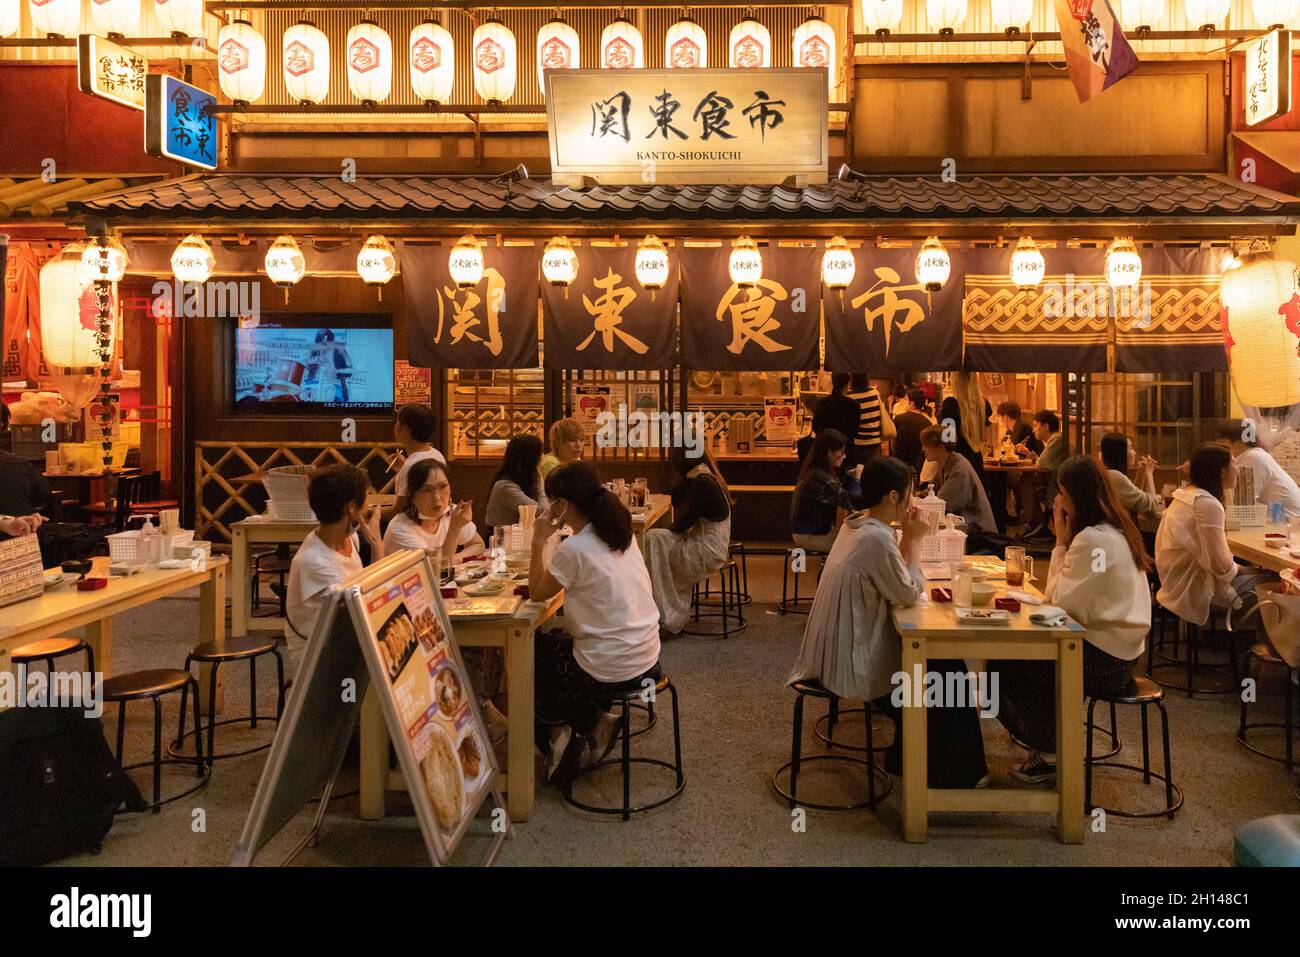 Kunden in einem Restaurant im Miyashita Park in Shibuya, Tokio.das Nachtleben in Tokyos Unterhaltungsviertel Shibuya kehrt wieder zur Normalität zurück, nachdem der mit dem Coronavirus in Verbindung stehende Ausnahmezustand in Tokio aufgehoben wurde. Restaurants und Bars können abends geöffnet sein und wieder Alkohol servieren. (Foto von Stanislav Kogiku / SOPA Images/Sipa USA) Stockfoto